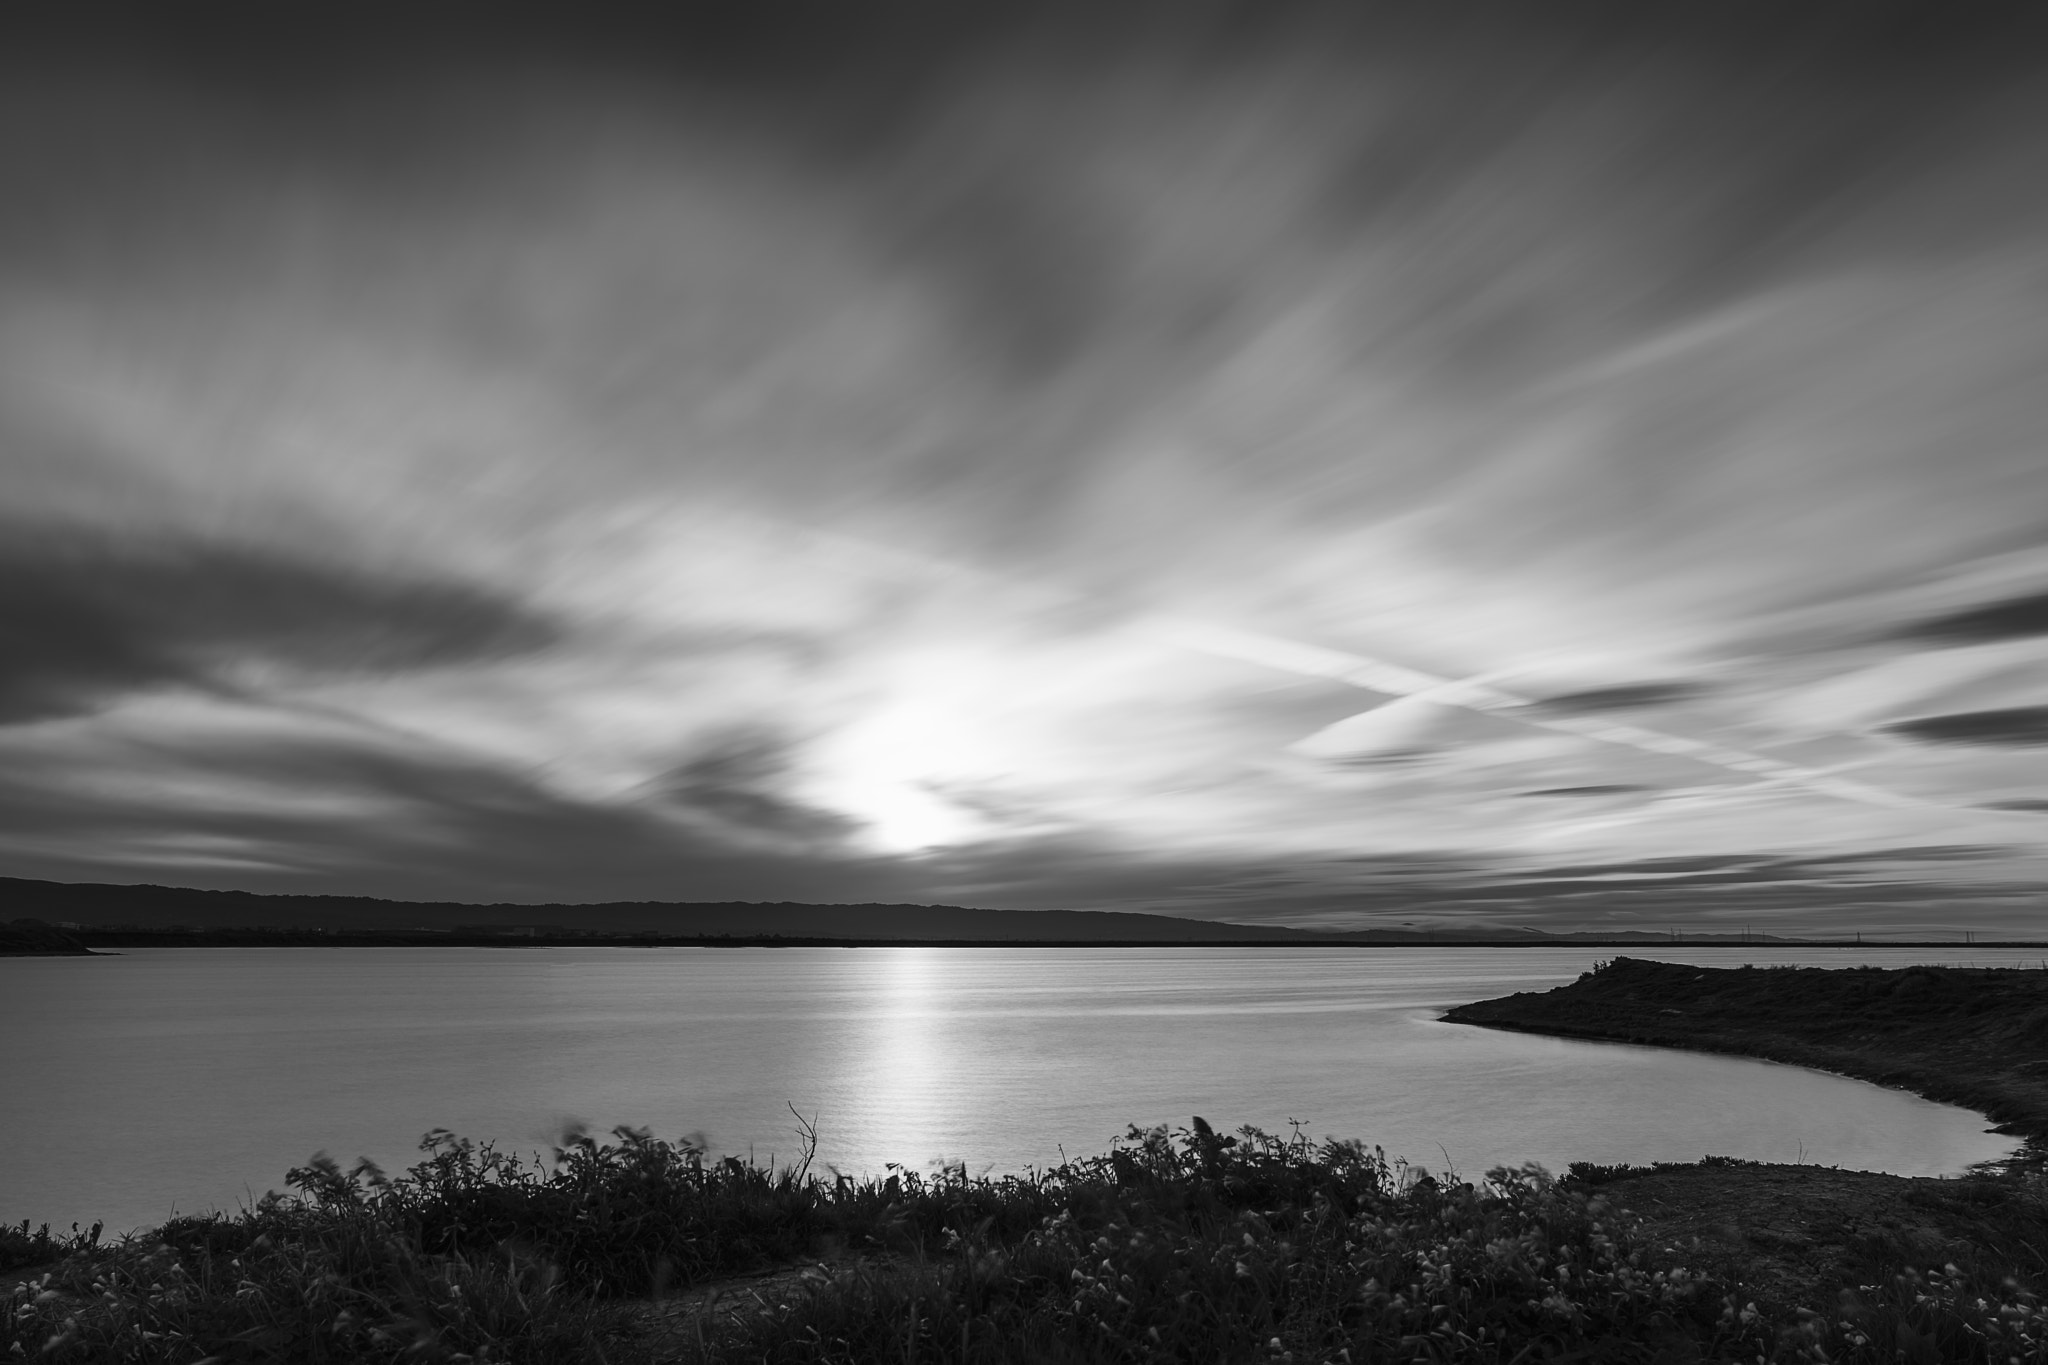 Sony a6300 sample photo. Sunset at alviso marina county park photography